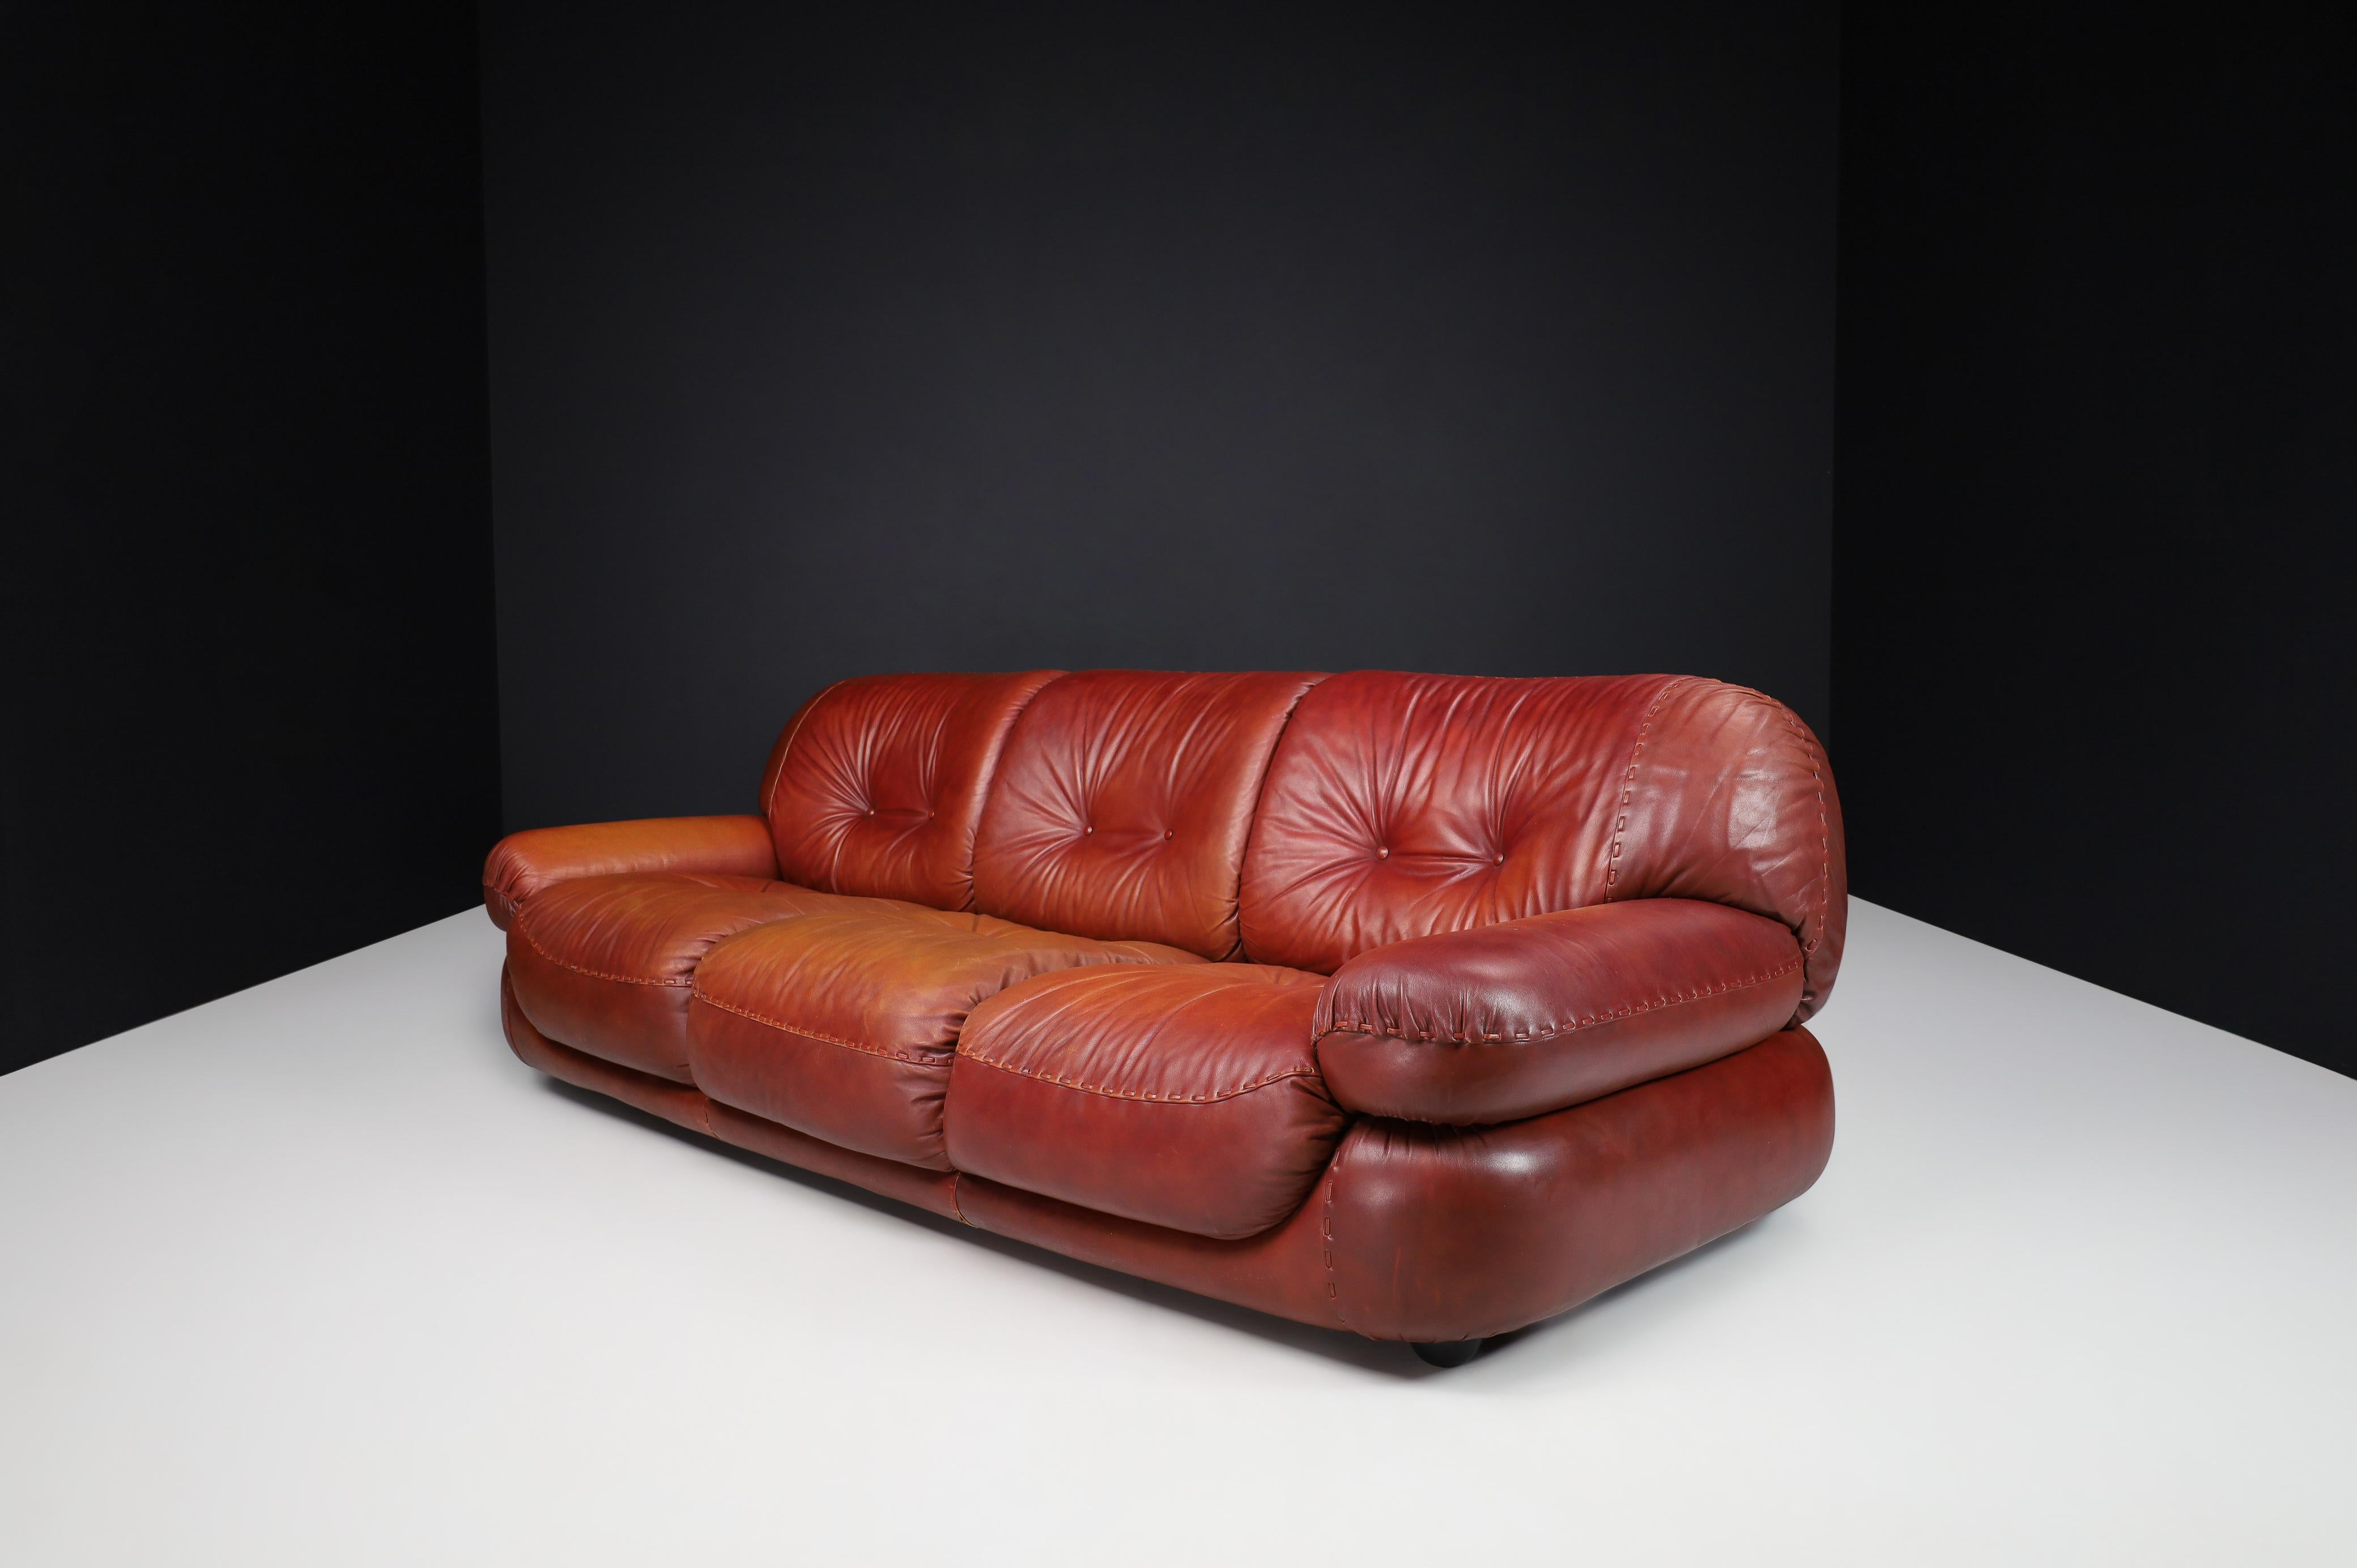 Großes Lounge-Sofa aus patiniertem Ziegelleder von Sapporo für Mobil Girgi, Italien 1970

Ein großes Loungesofa aus Leder von Sapporo für Mobil Girgi, Italien, aus den 1970er Jahren. Ein großes, flauschiges, stilvolles Lounge-Sofa, das mit seinen